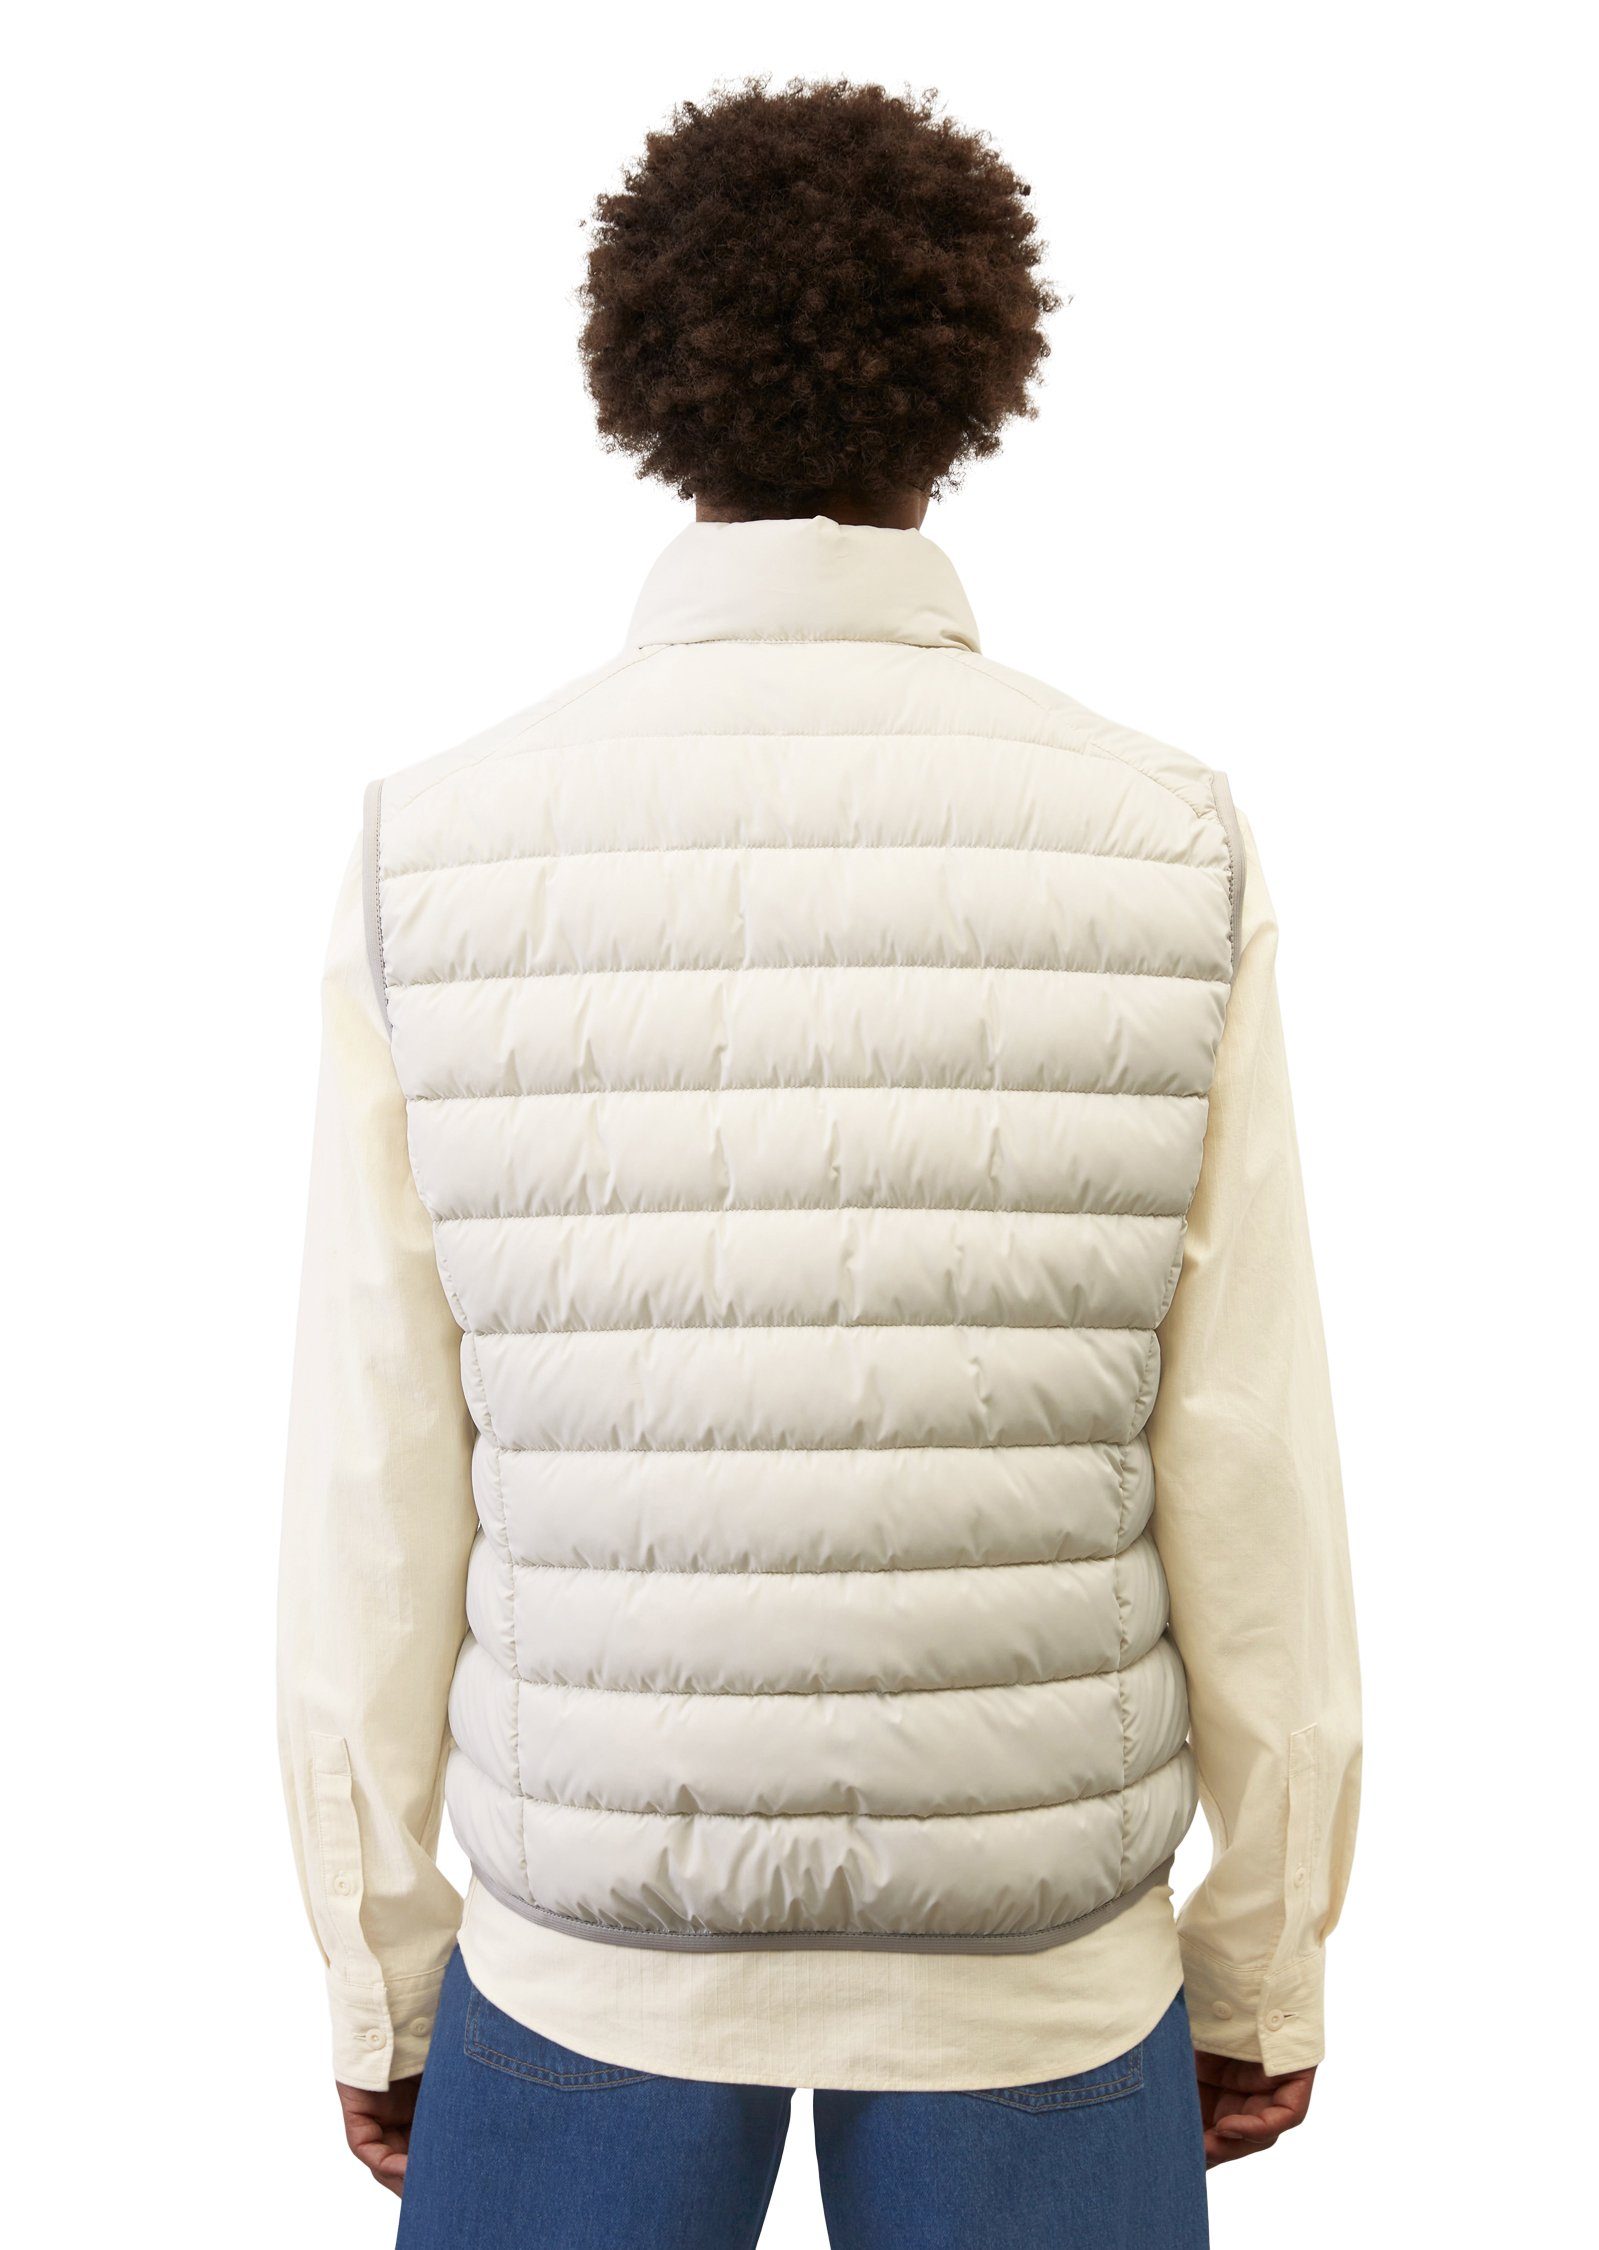 Marc O'Polo Steppweste Vest, collar mit stand-up sdnd, Oberfläche white linen wasserabweisender